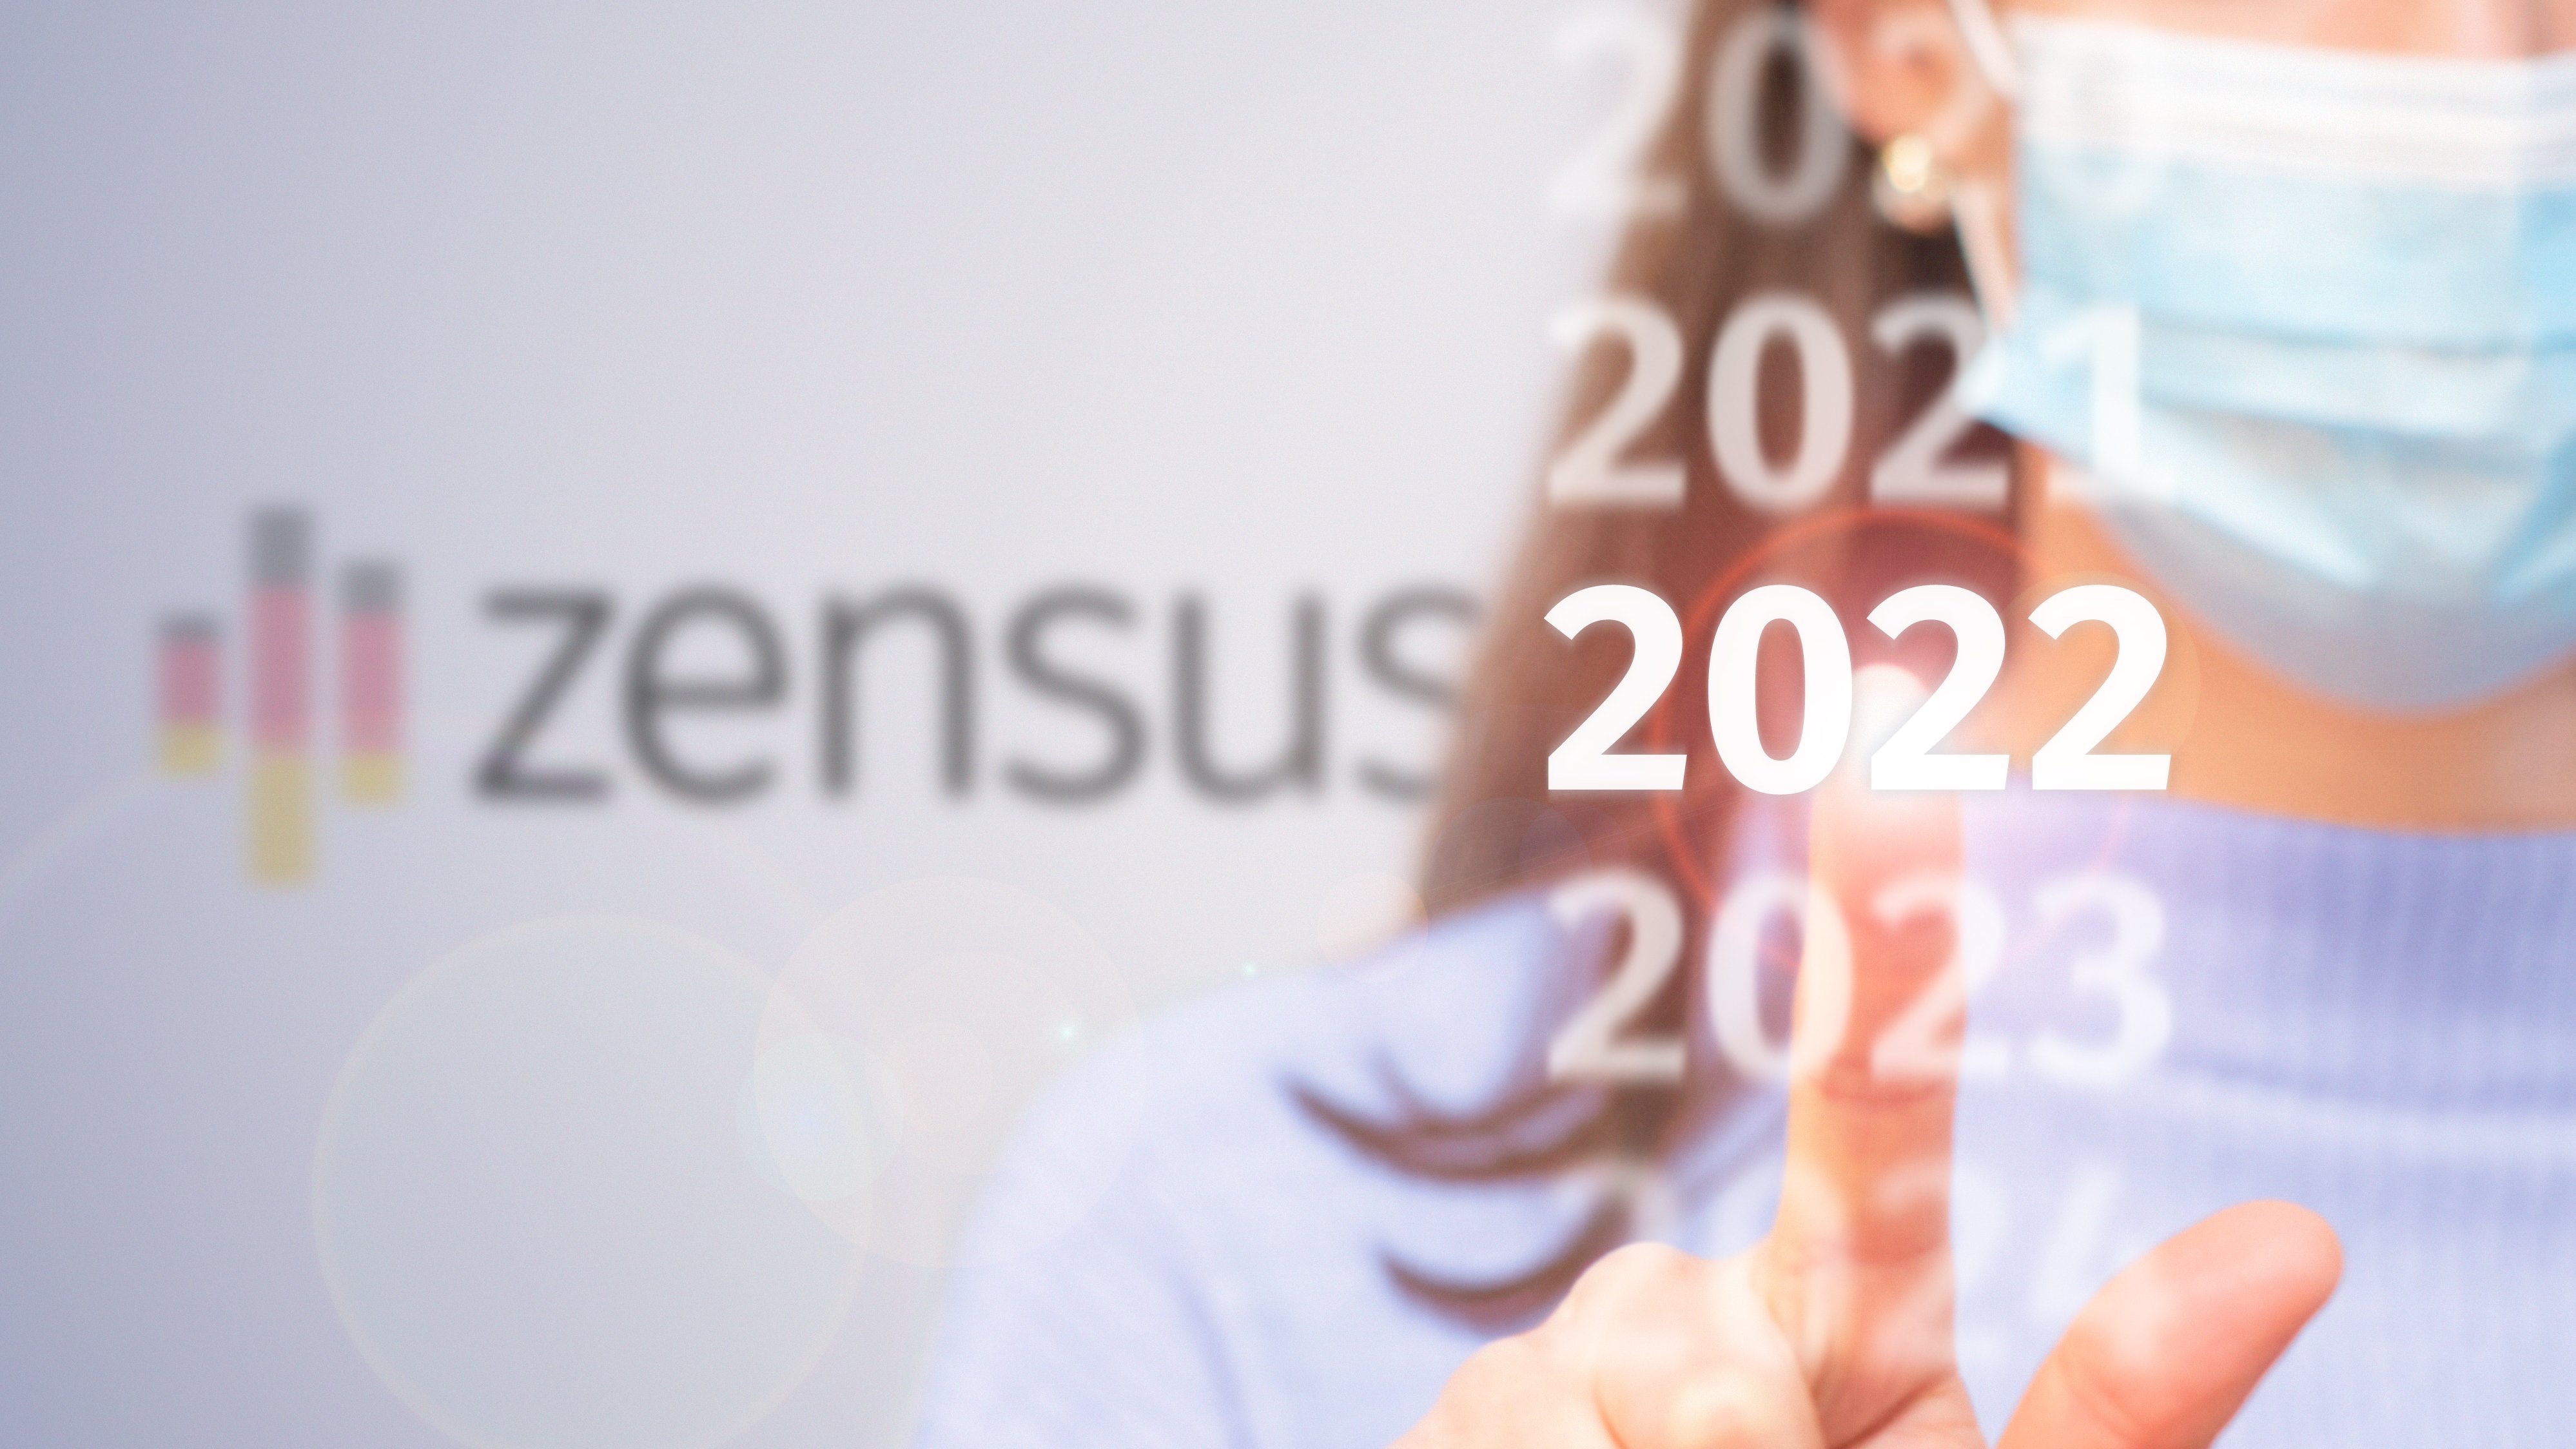 Zensus Symbolbild mit Jahreszahl 2022